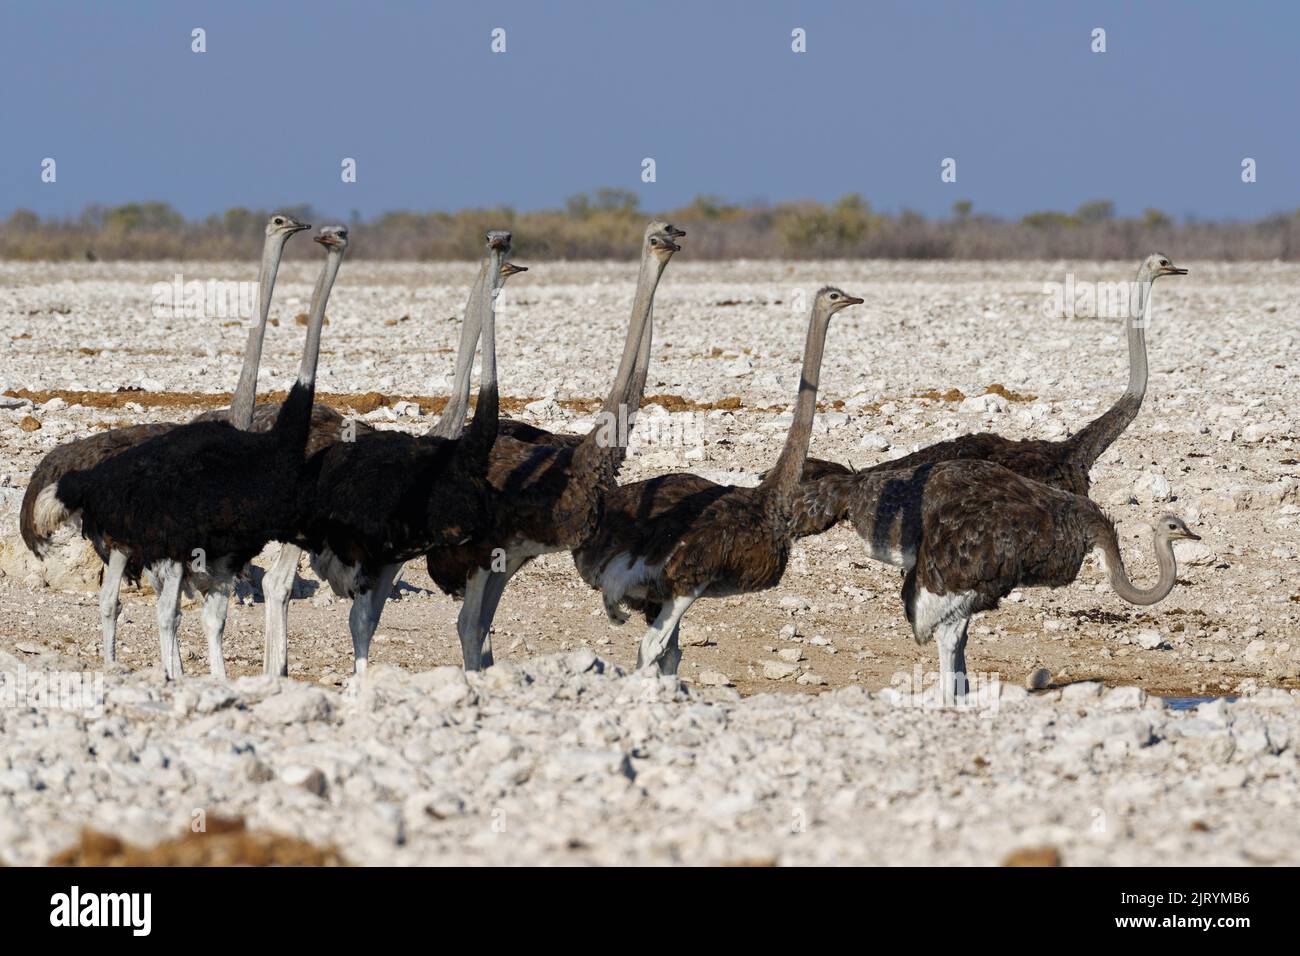 Avestruces sudafricanos (Struthio camelus australis), rebaño, recolección de avestruces adultos machos y hembras en el estanque, Parque Nacional Etosha, Namibia, Foto de stock